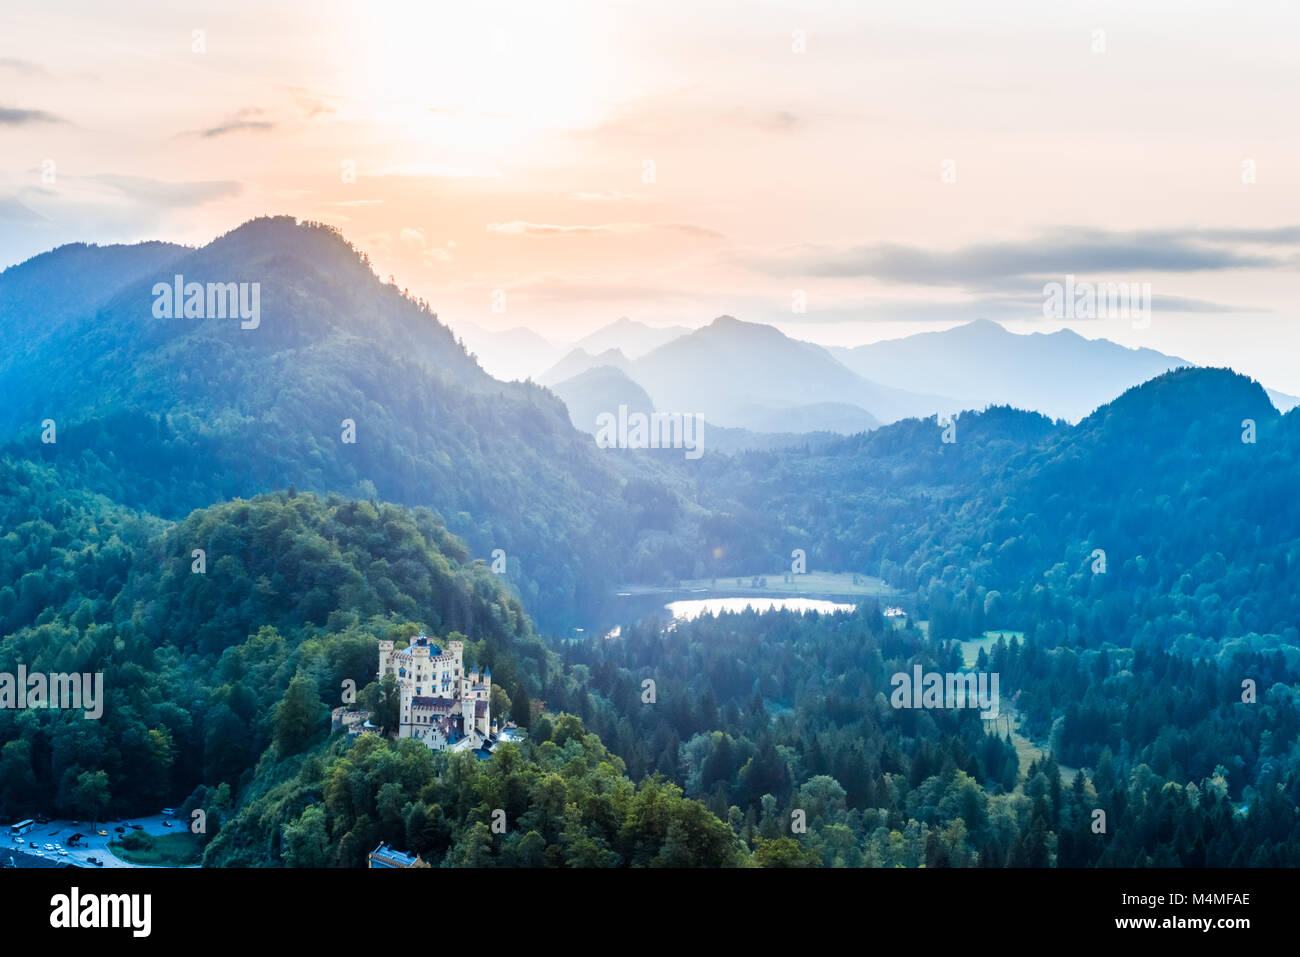 Vallée de l'Alpsee Alpes bavaroises, Fussen, Allemagne Banque D'Images